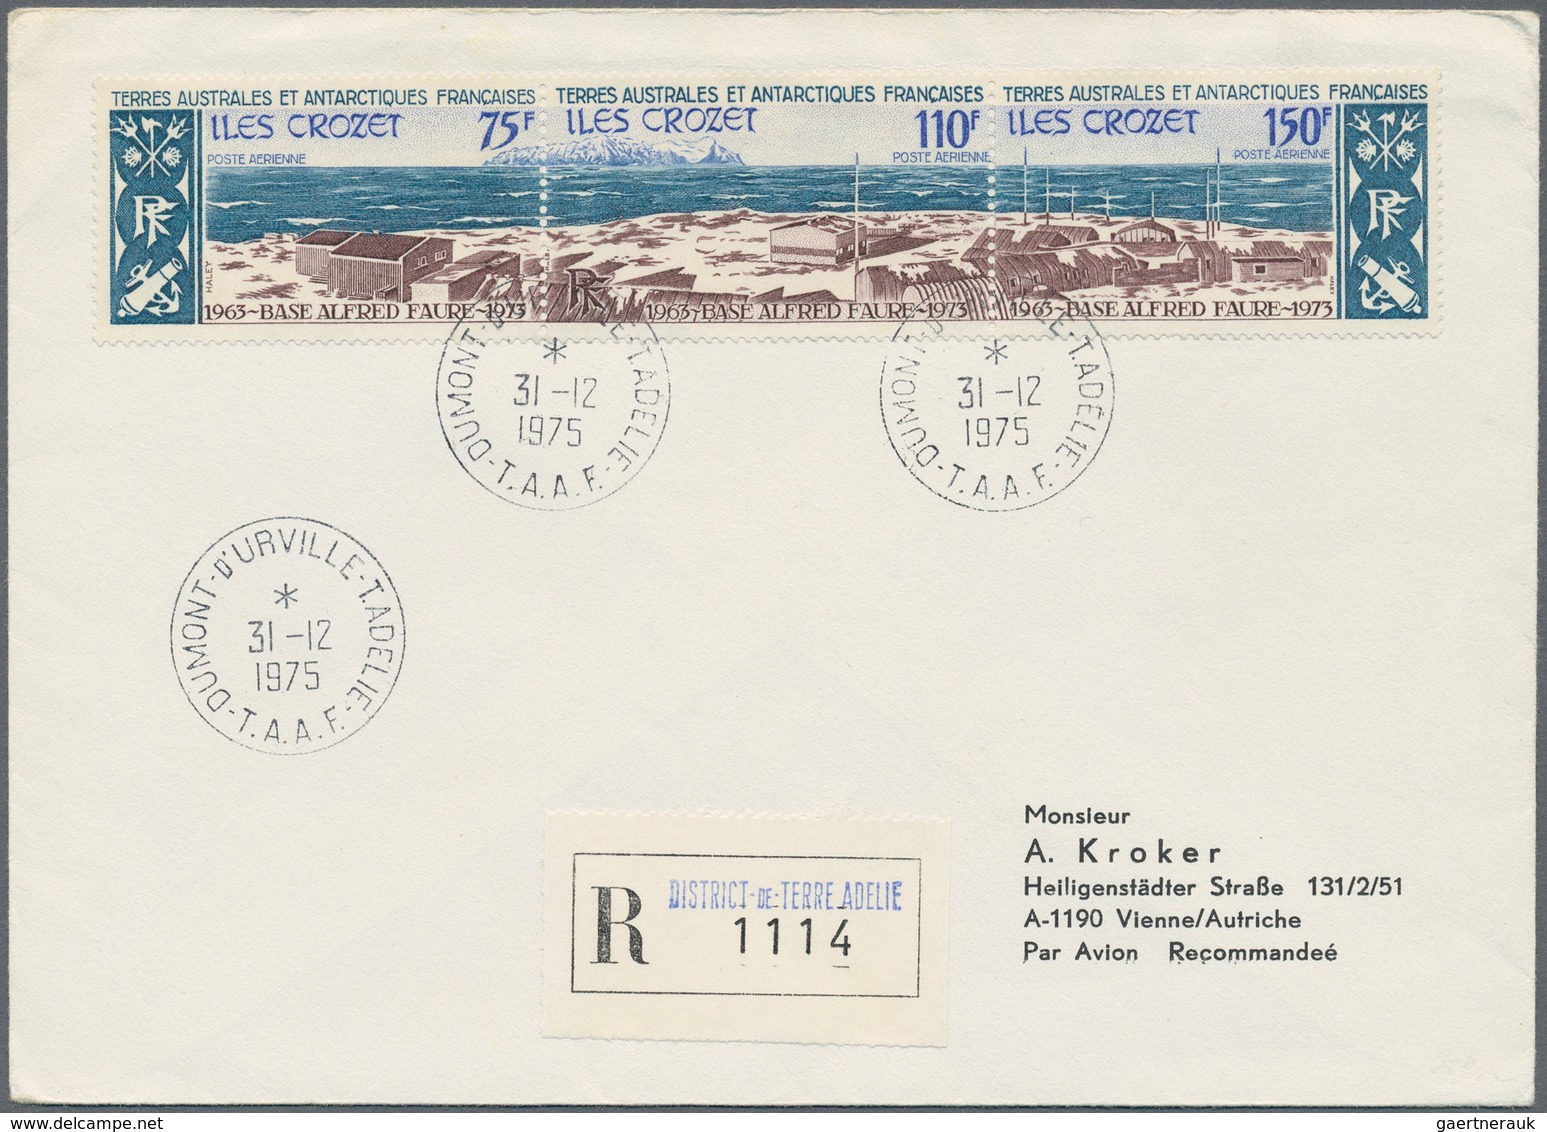 Französische Gebiete in der Antarktis: 1957/1976, lot of seven covers/cards with attractive franking